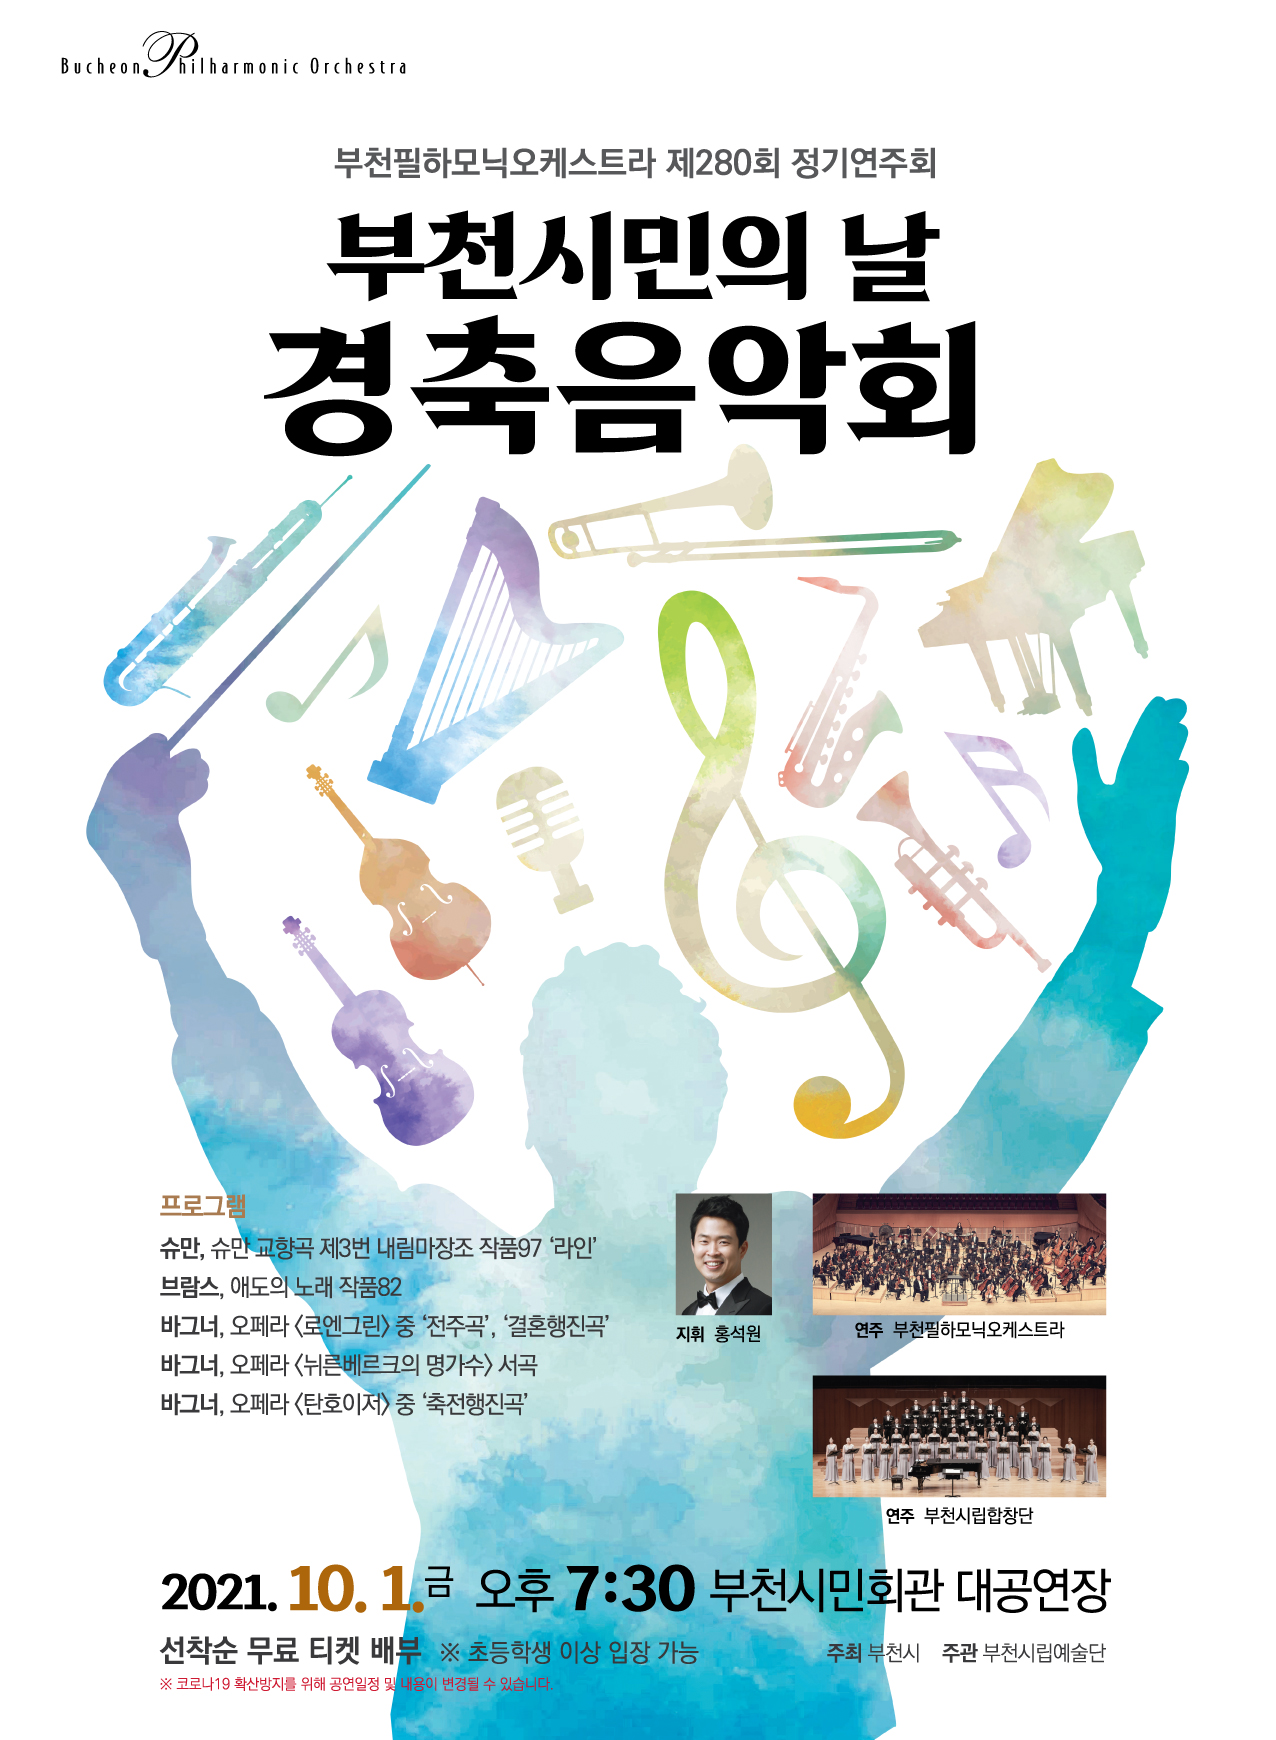 [10.1] 부천필하모닉오케스트라 제280회 정기연주회 - 시민의날 경축음악회